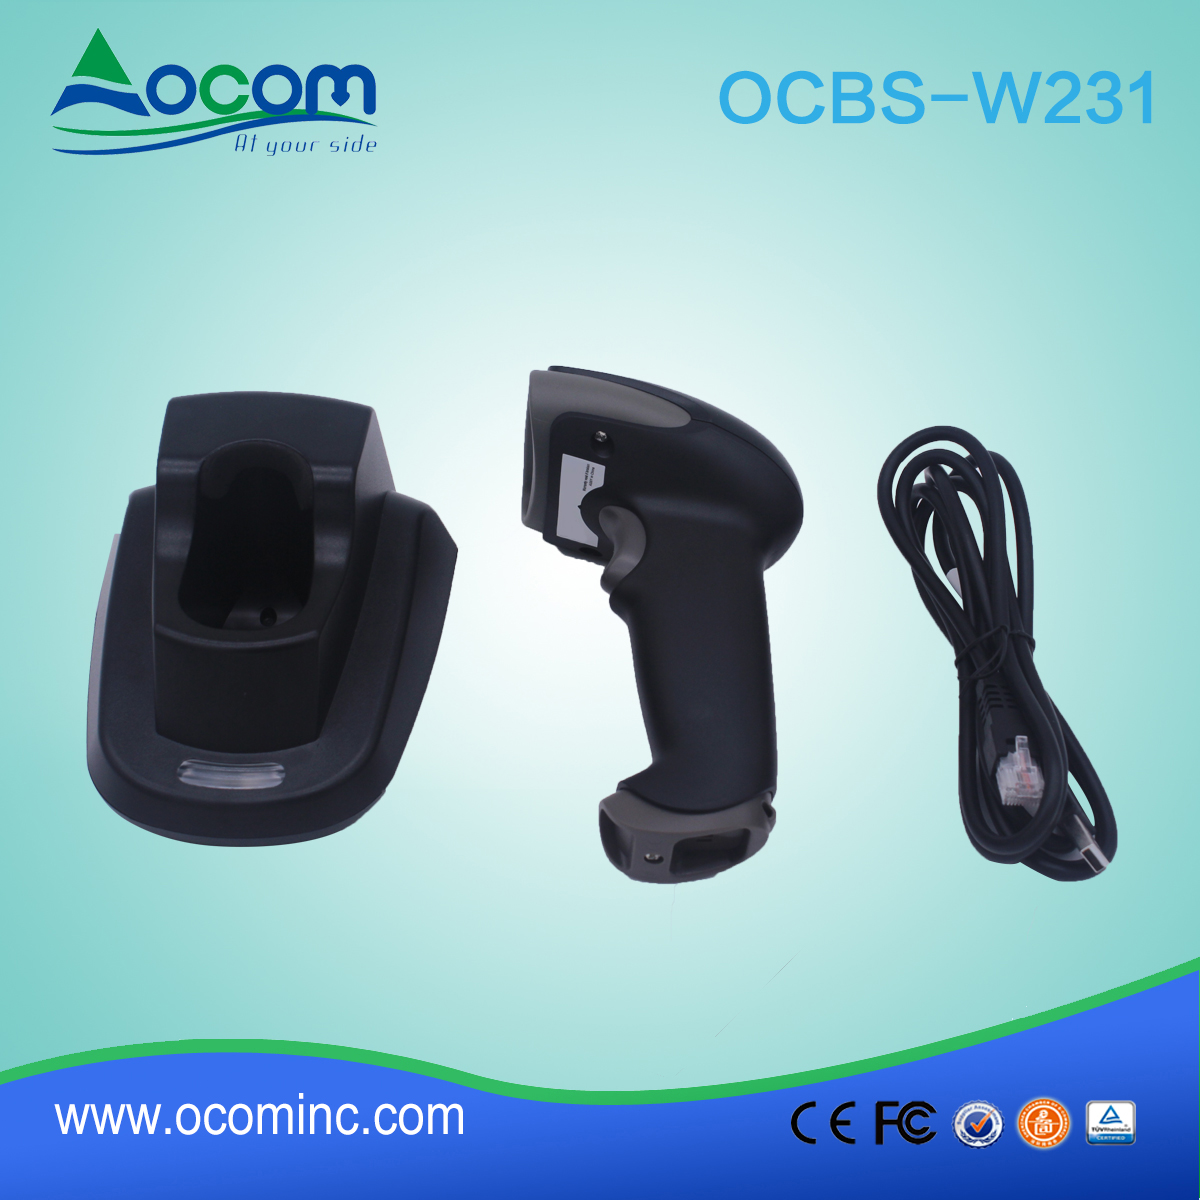 (OCBS-W231) 433Mhz 2d 无线条码扫描仪与 craddle 出售